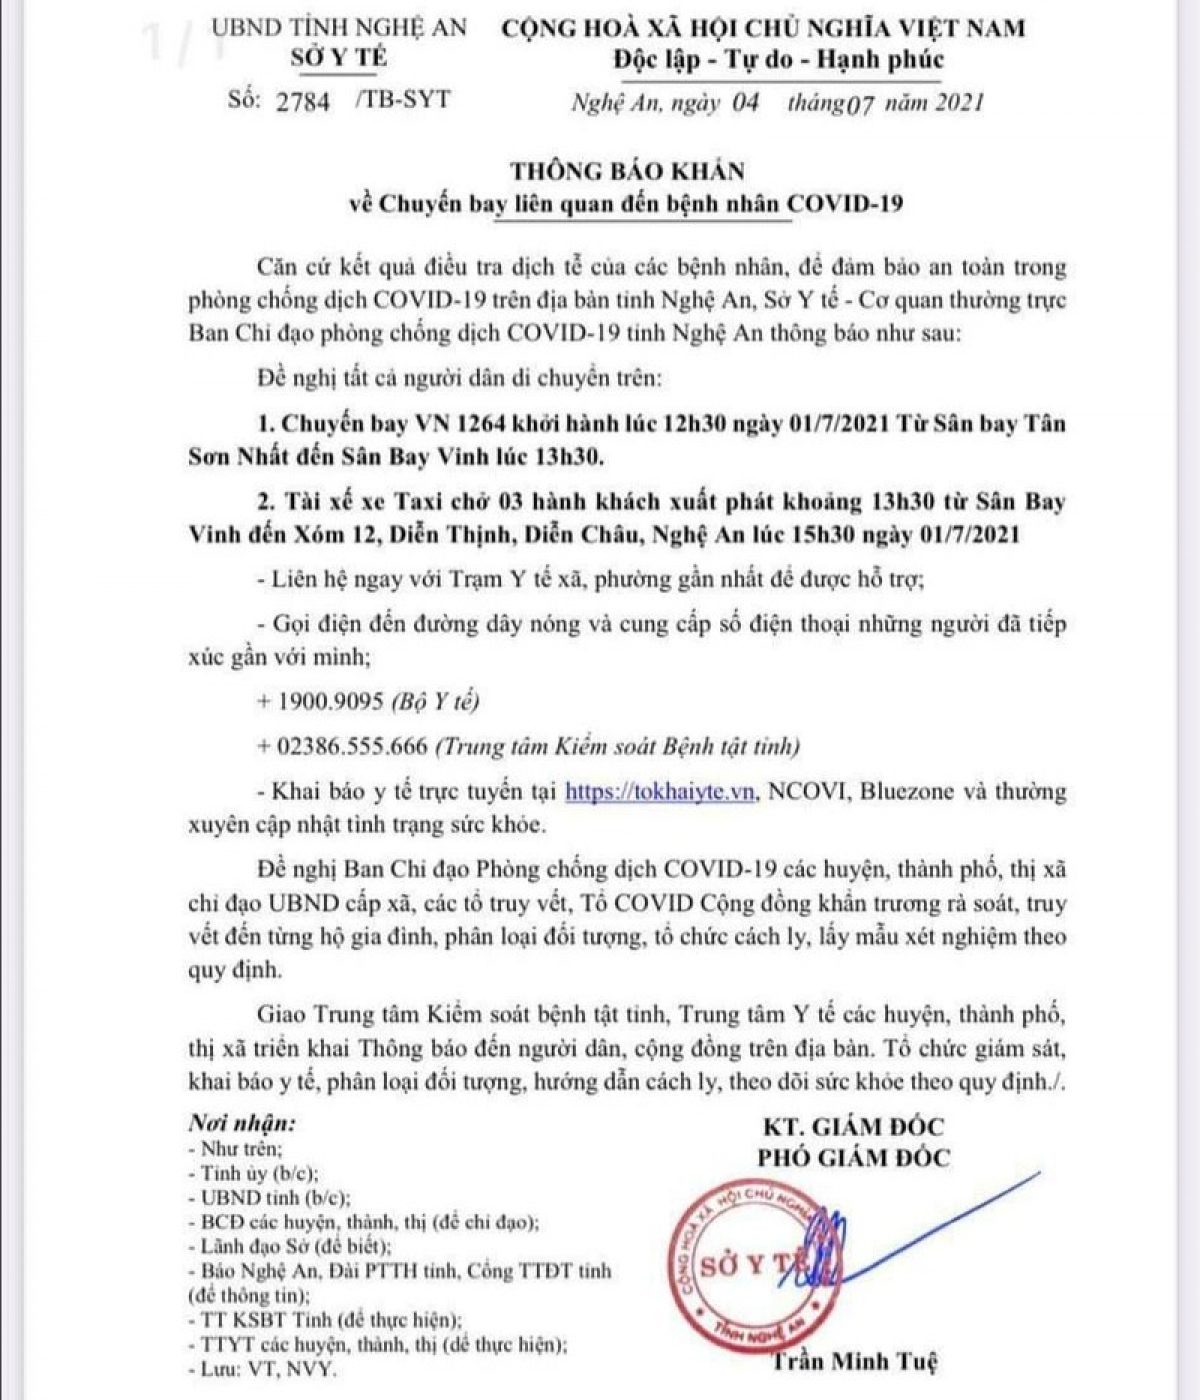 Thông báo khẩn của UBND tỉnh Nghệ An